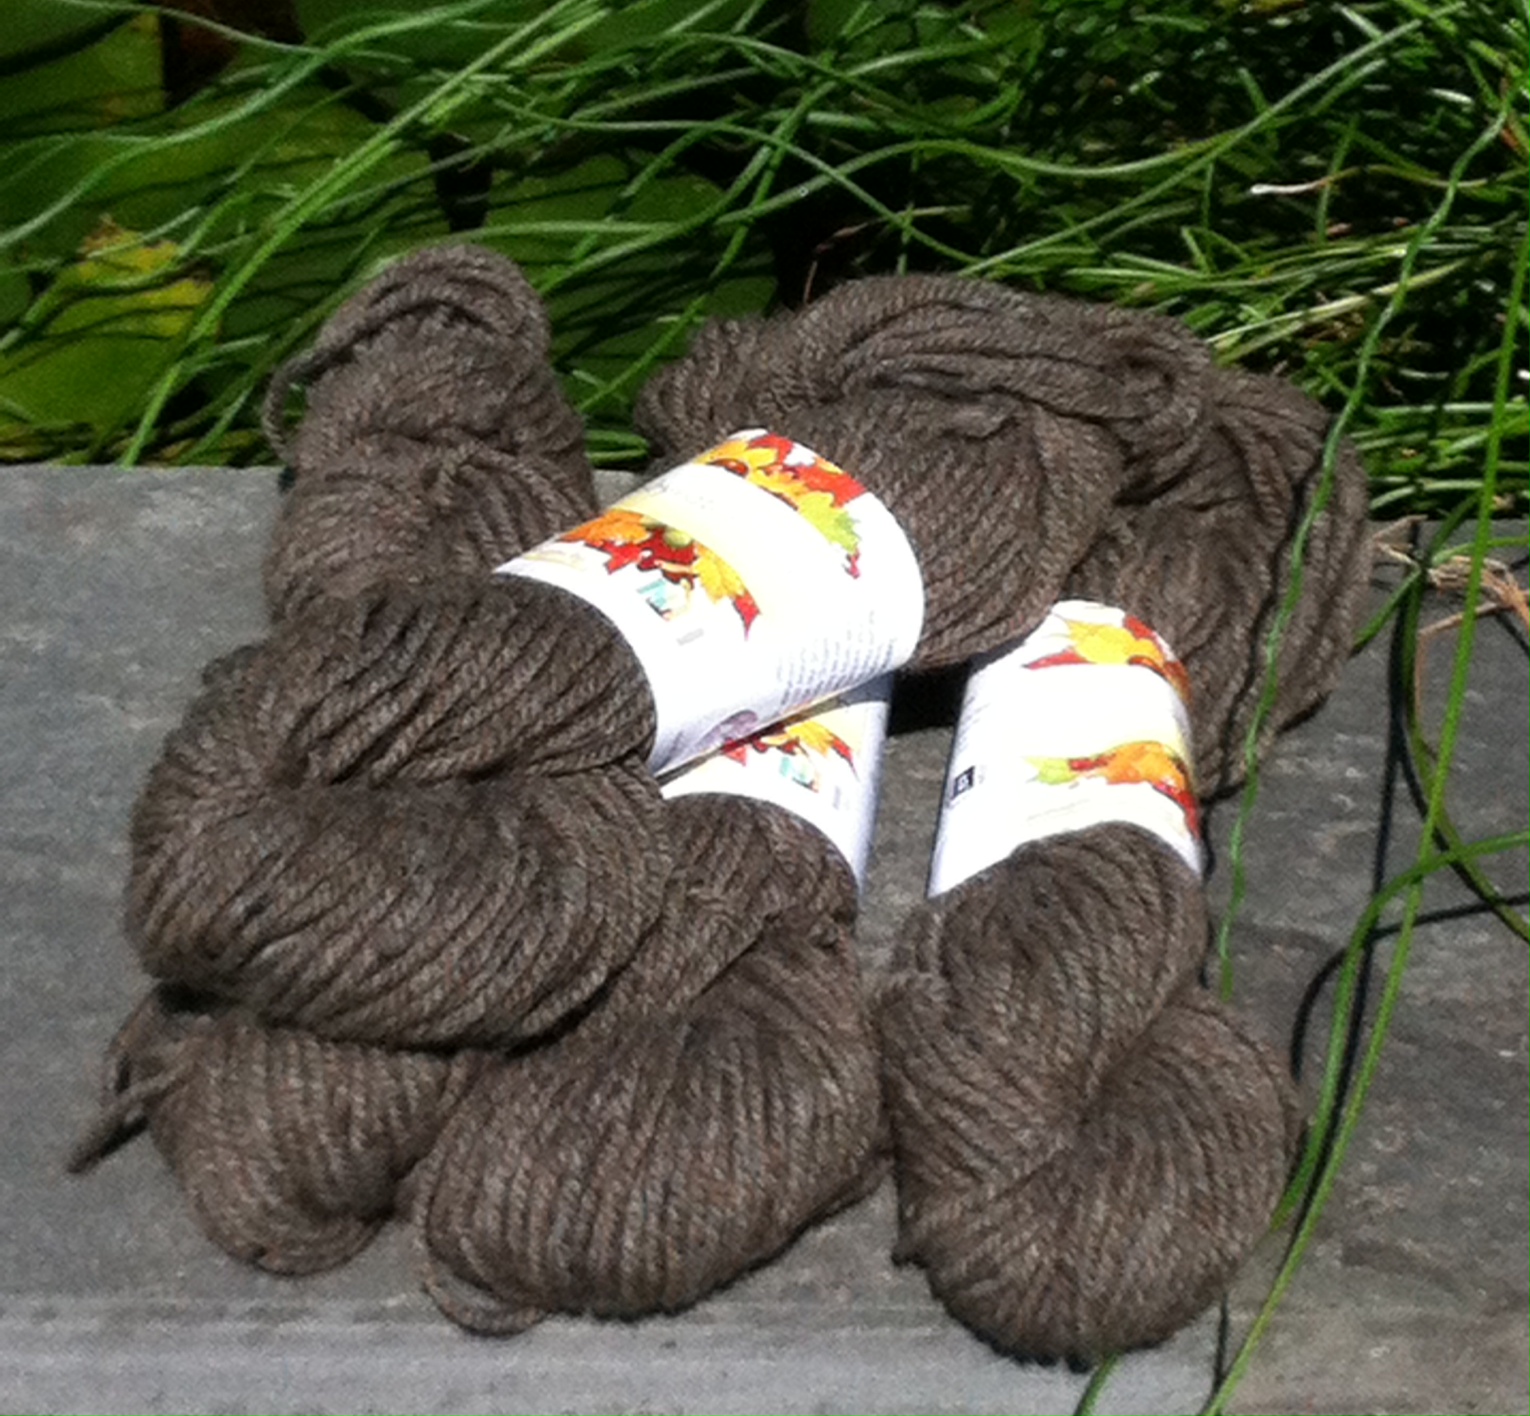 Bulky 3 ply Alpaca / Wool Yarn